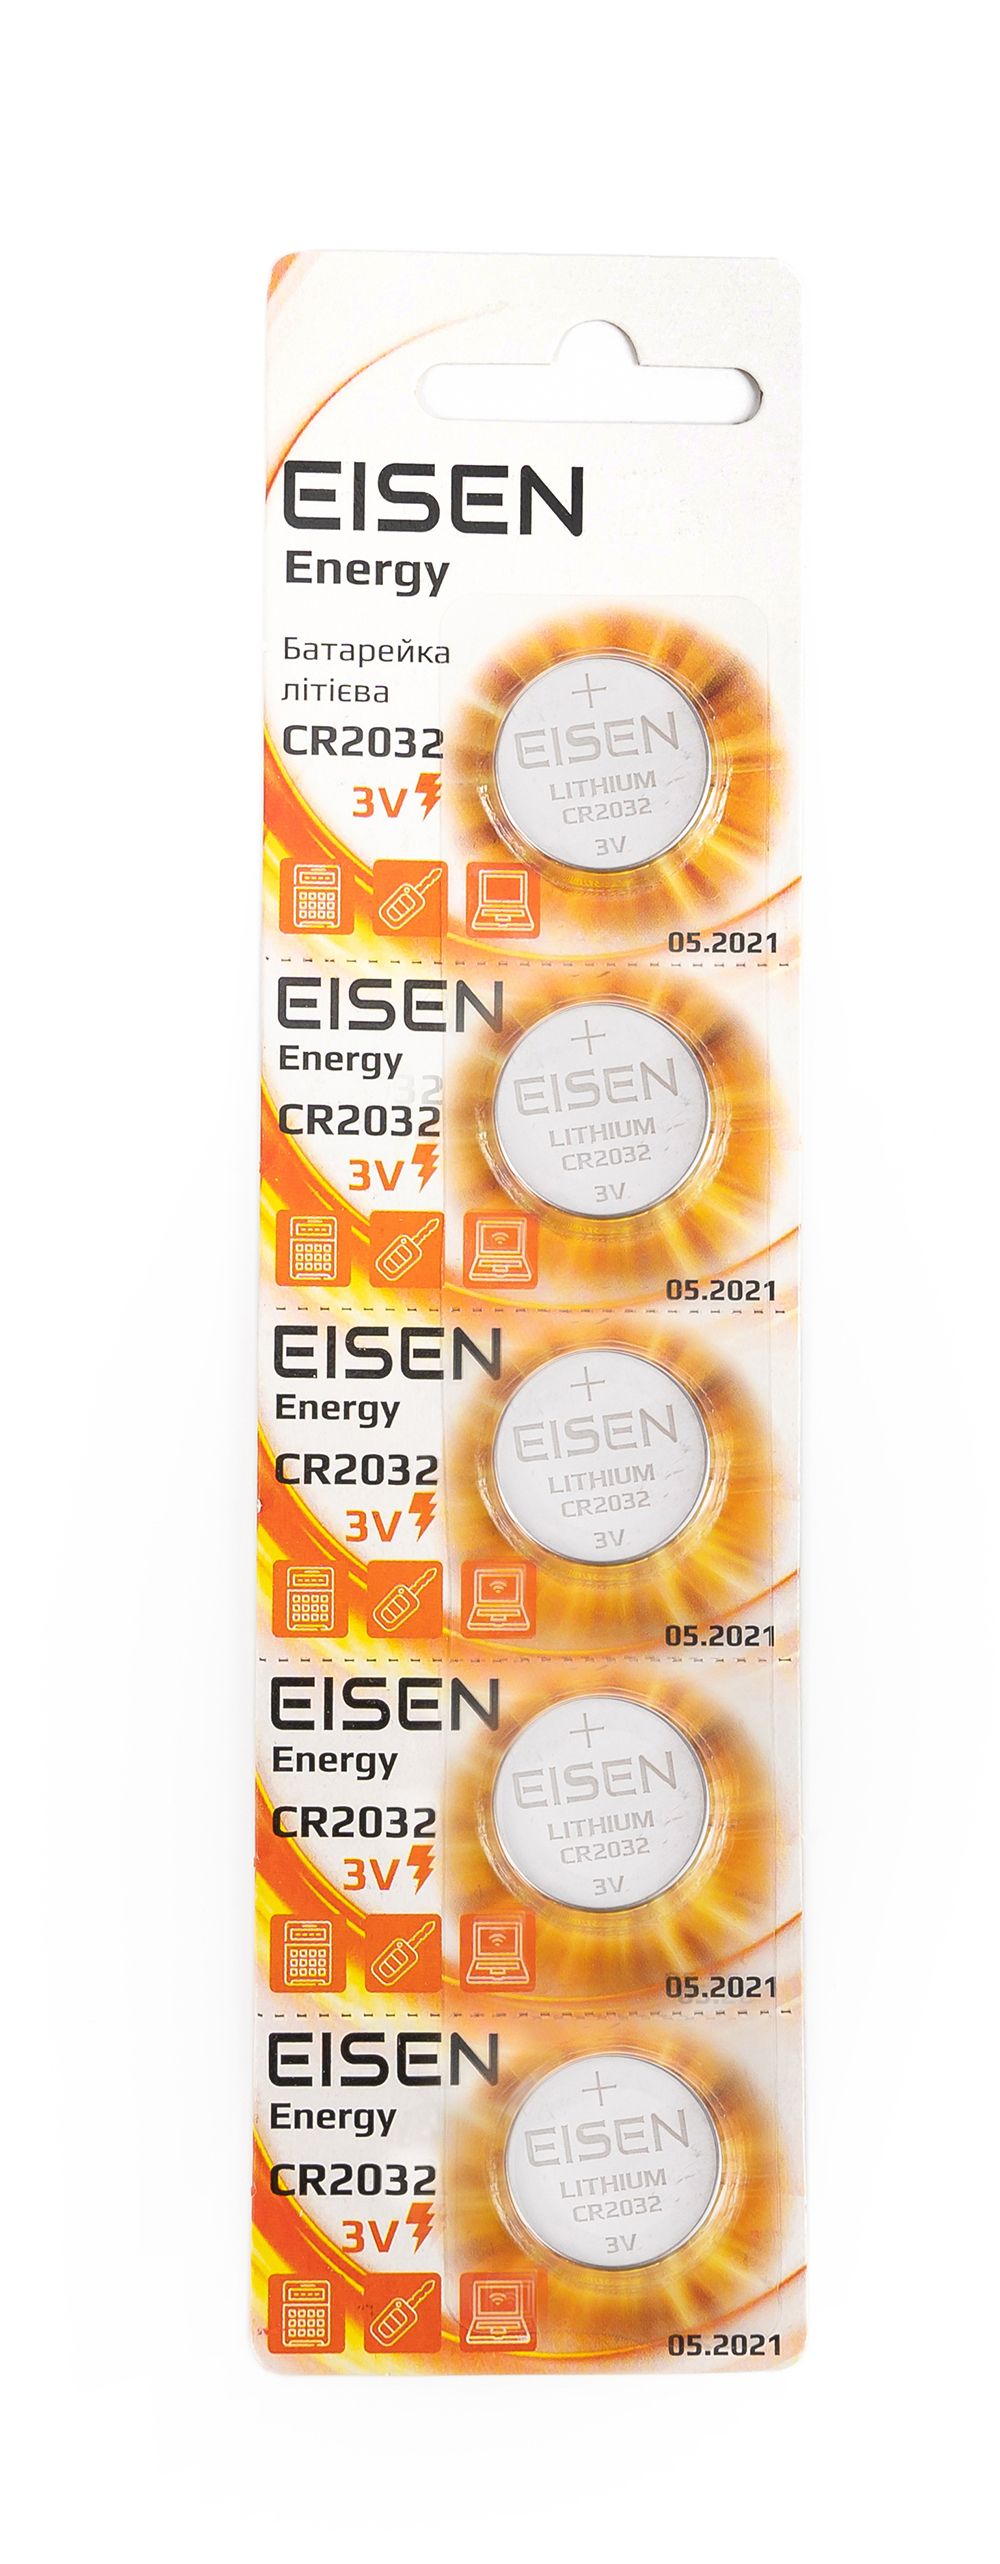 Eisen Energy CR2032